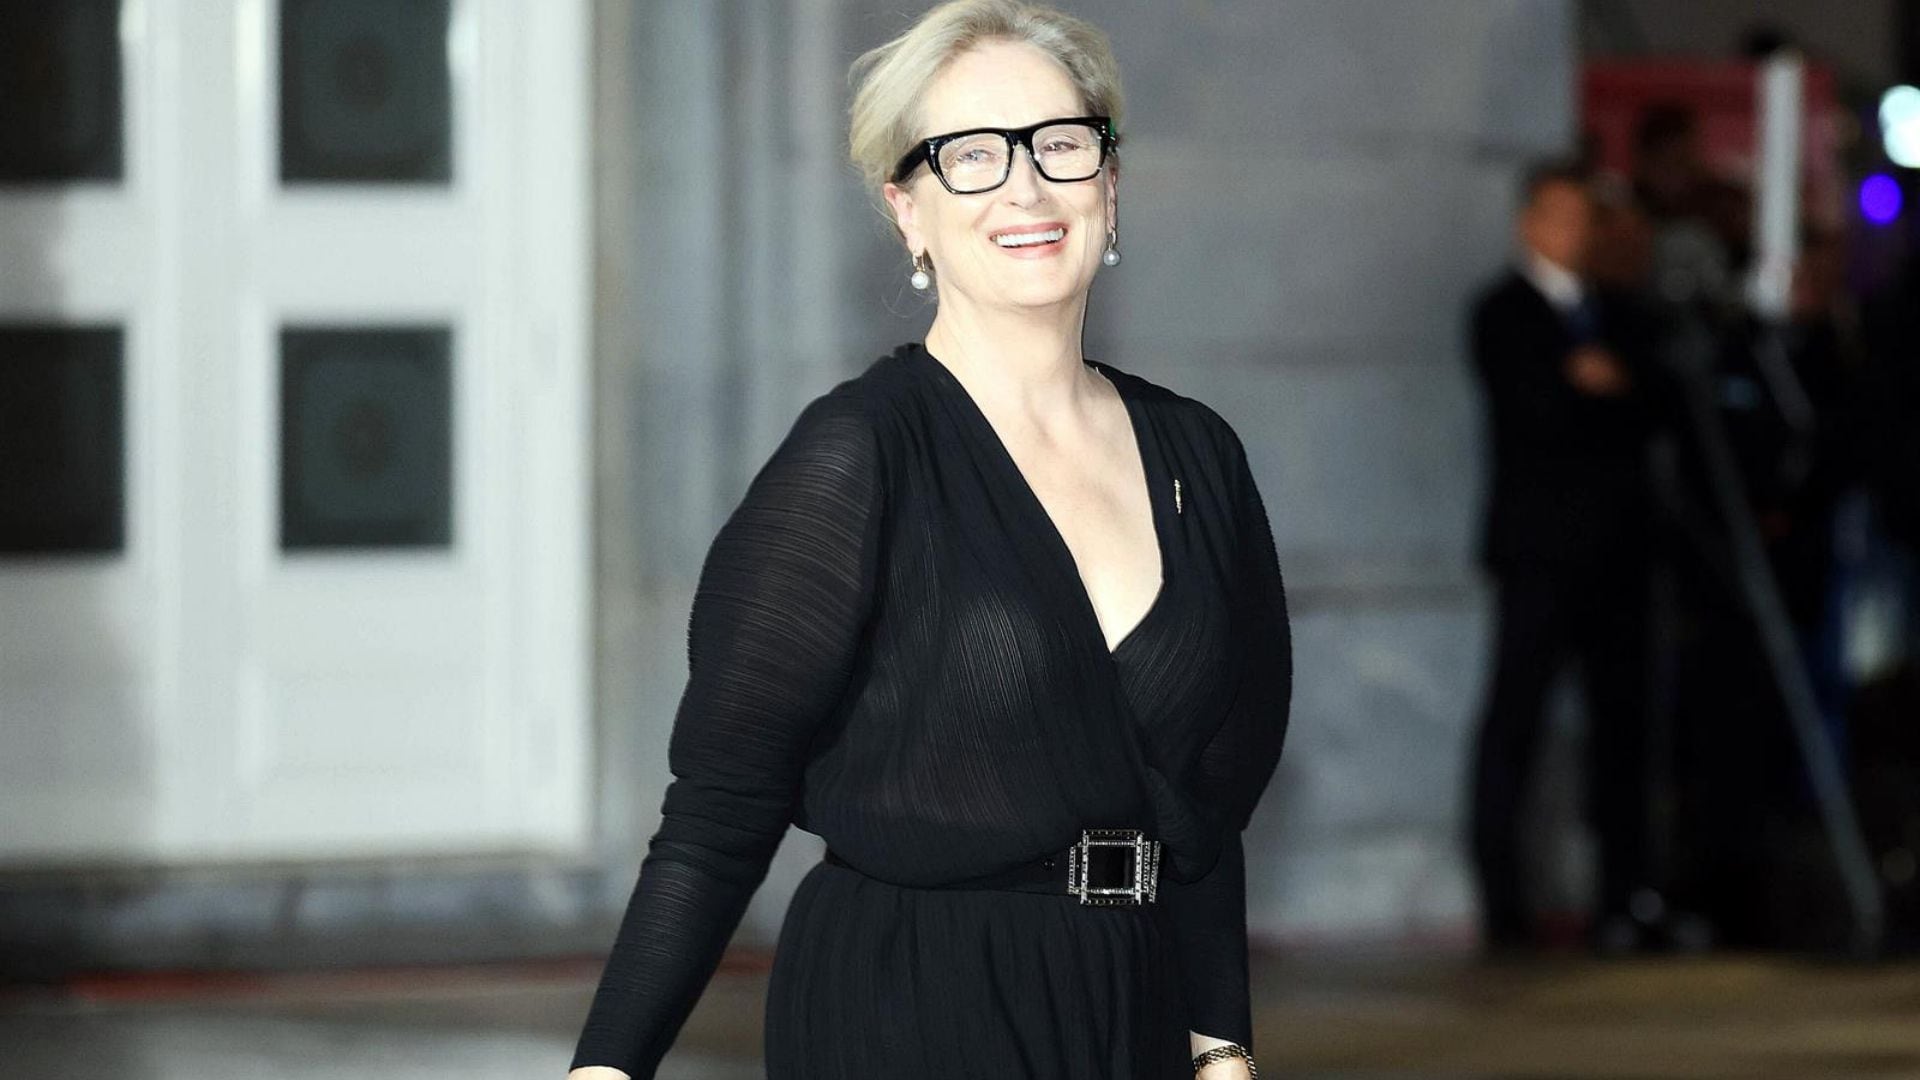 Por qué todos amamos a Meryl Streep, la abanderada de los derechos de las mujeres y la causa LGBTQ